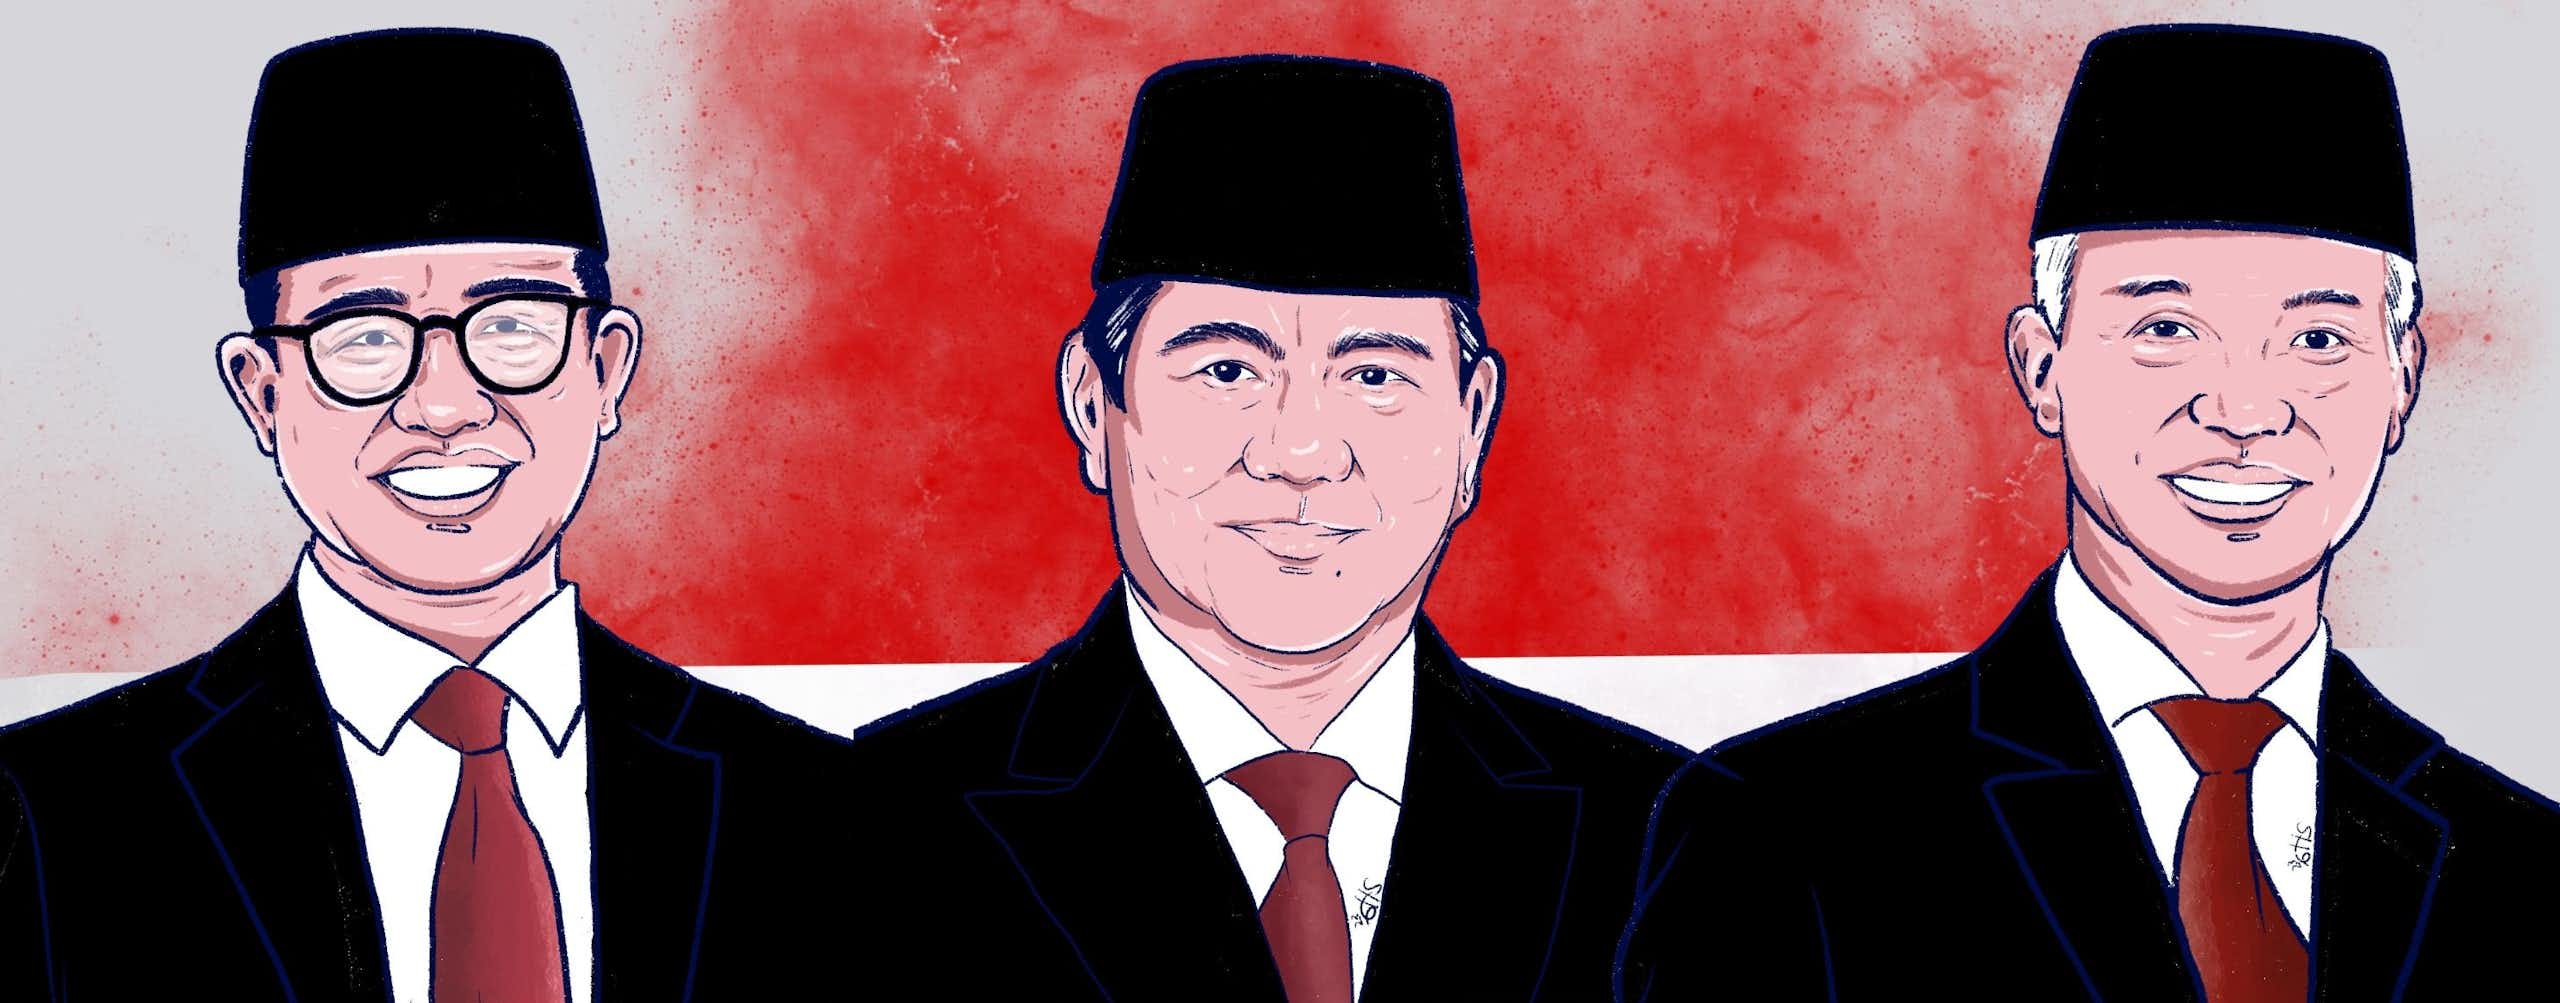 Ketiga calon presiden Indonesia masih dihantui catatan HAM yang mengkhawatirkan